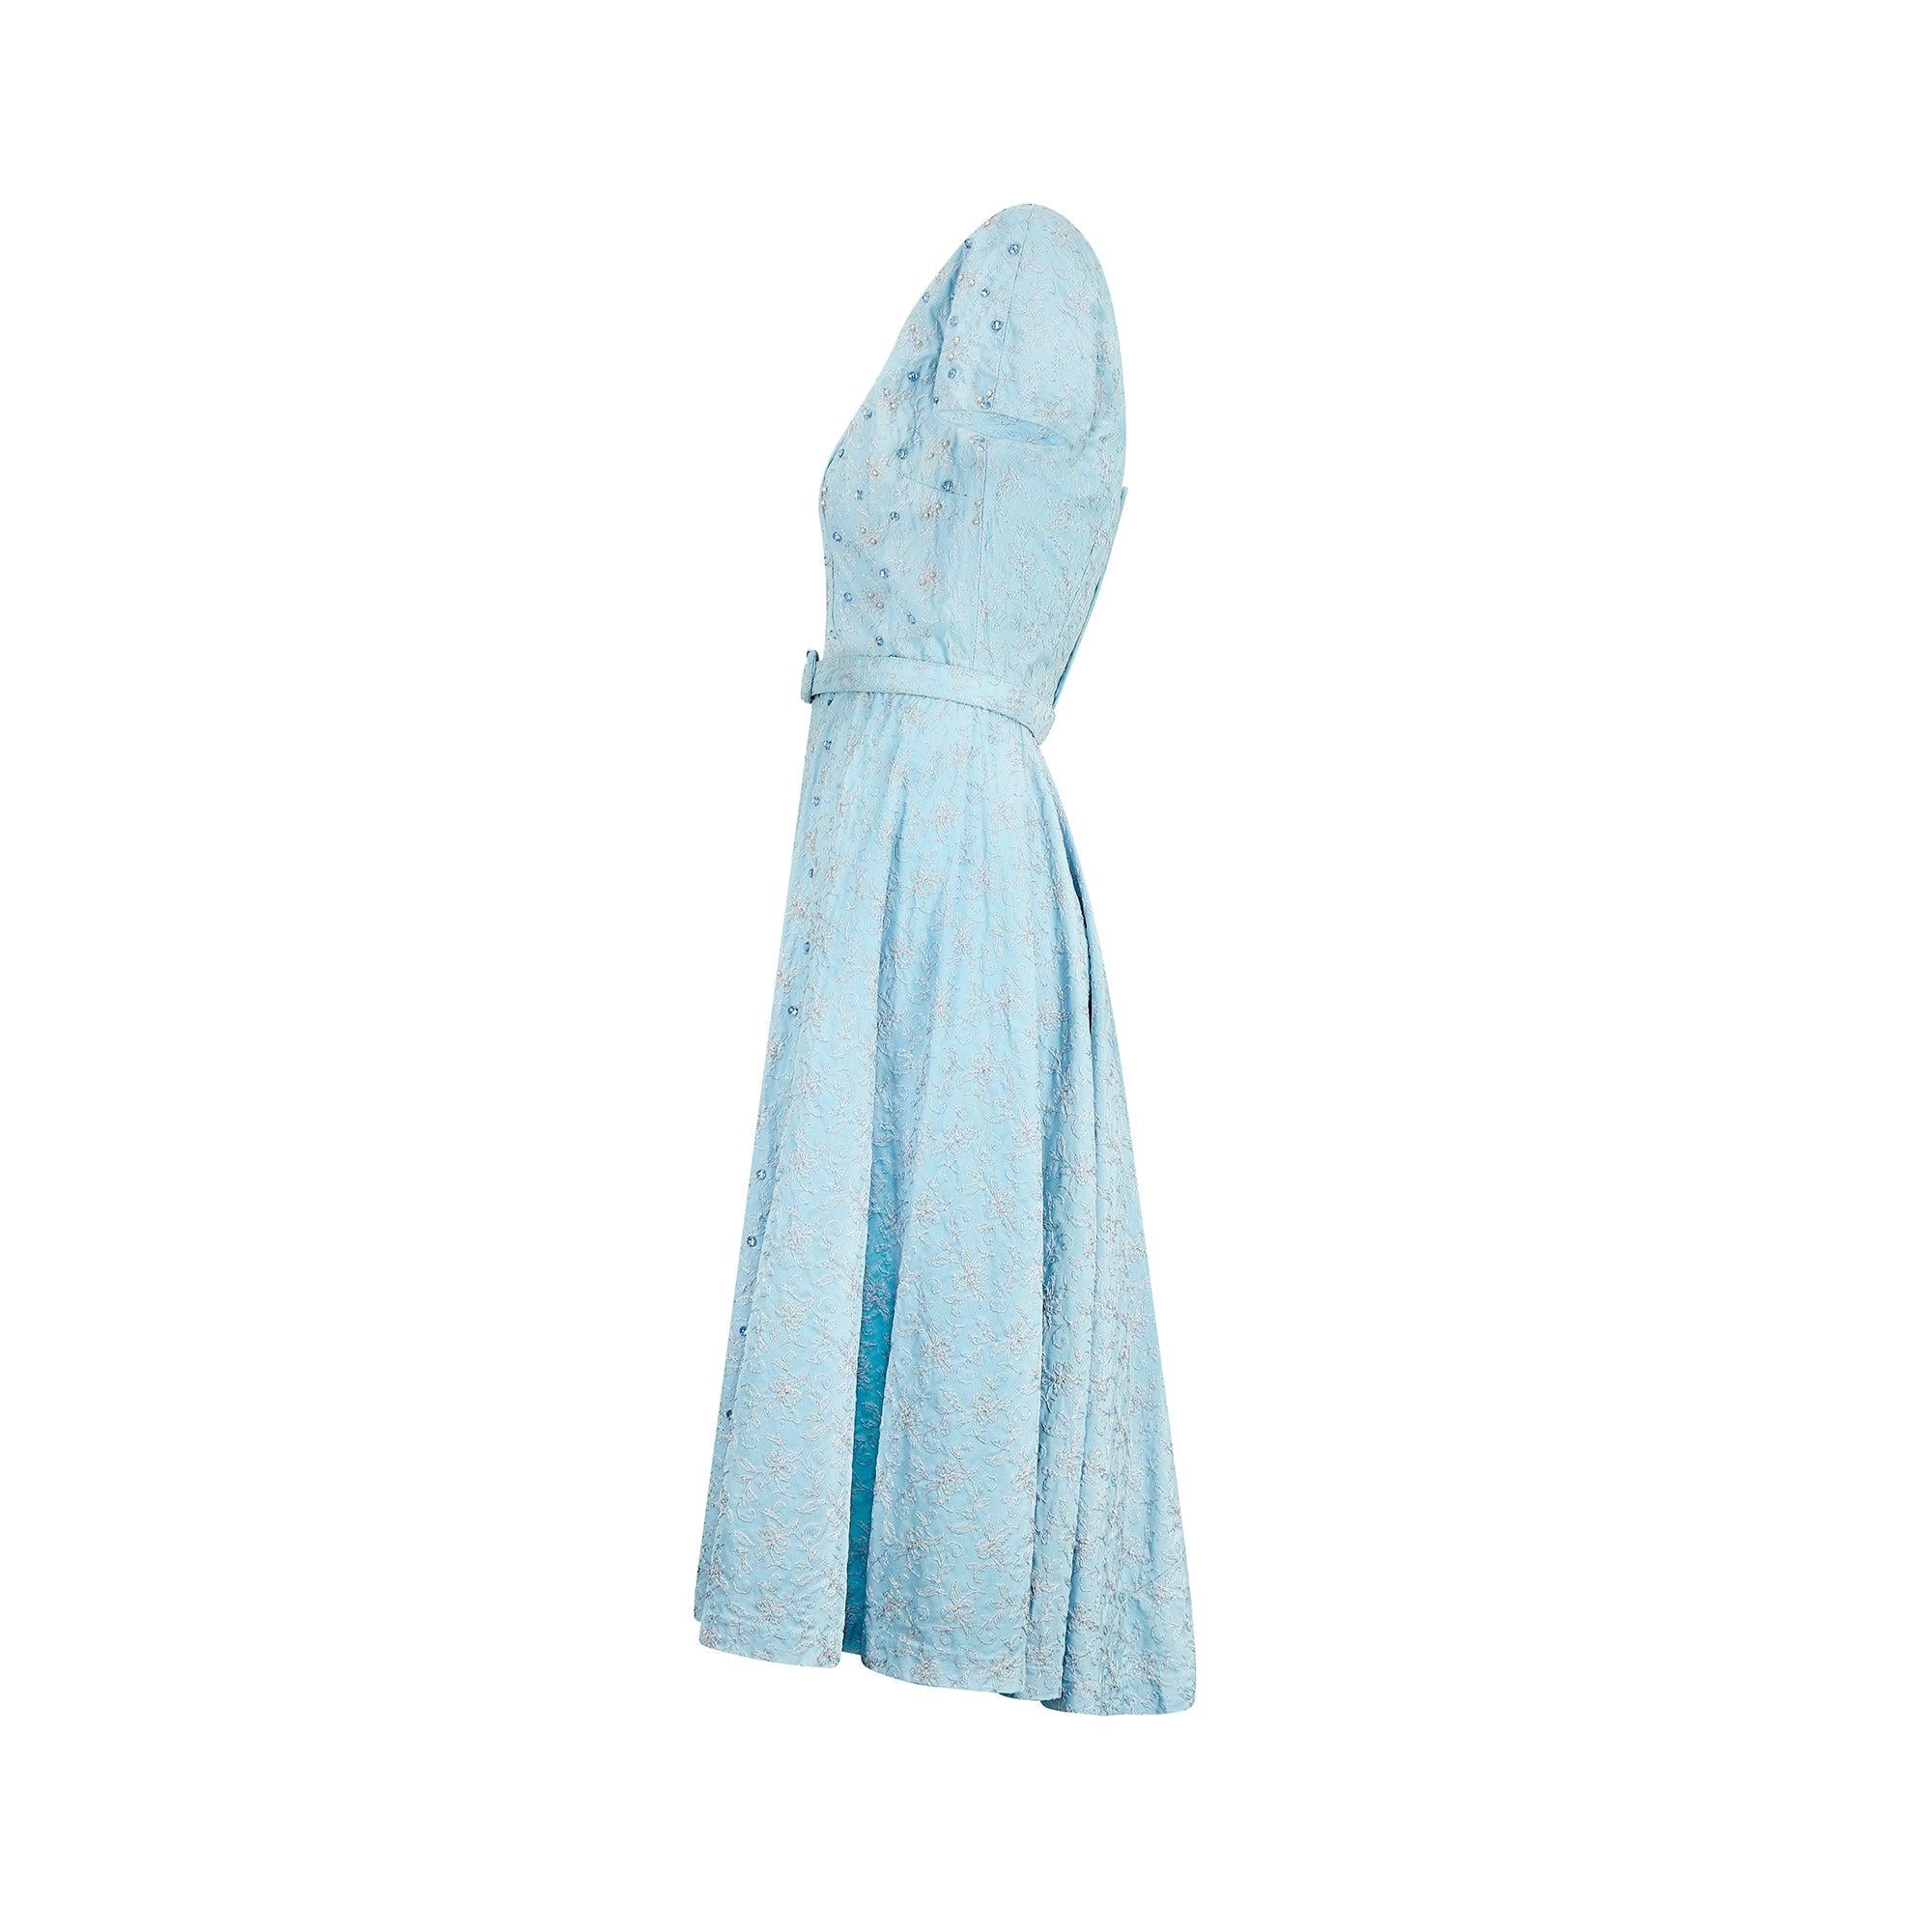 Cette robe superbement embellie a été conçue dans les années 1950 et a très probablement été confectionnée sur mesure pour un événement spécial. Elle reprend de nombreuses caractéristiques des modèles les plus populaires de l'époque avec ses manches